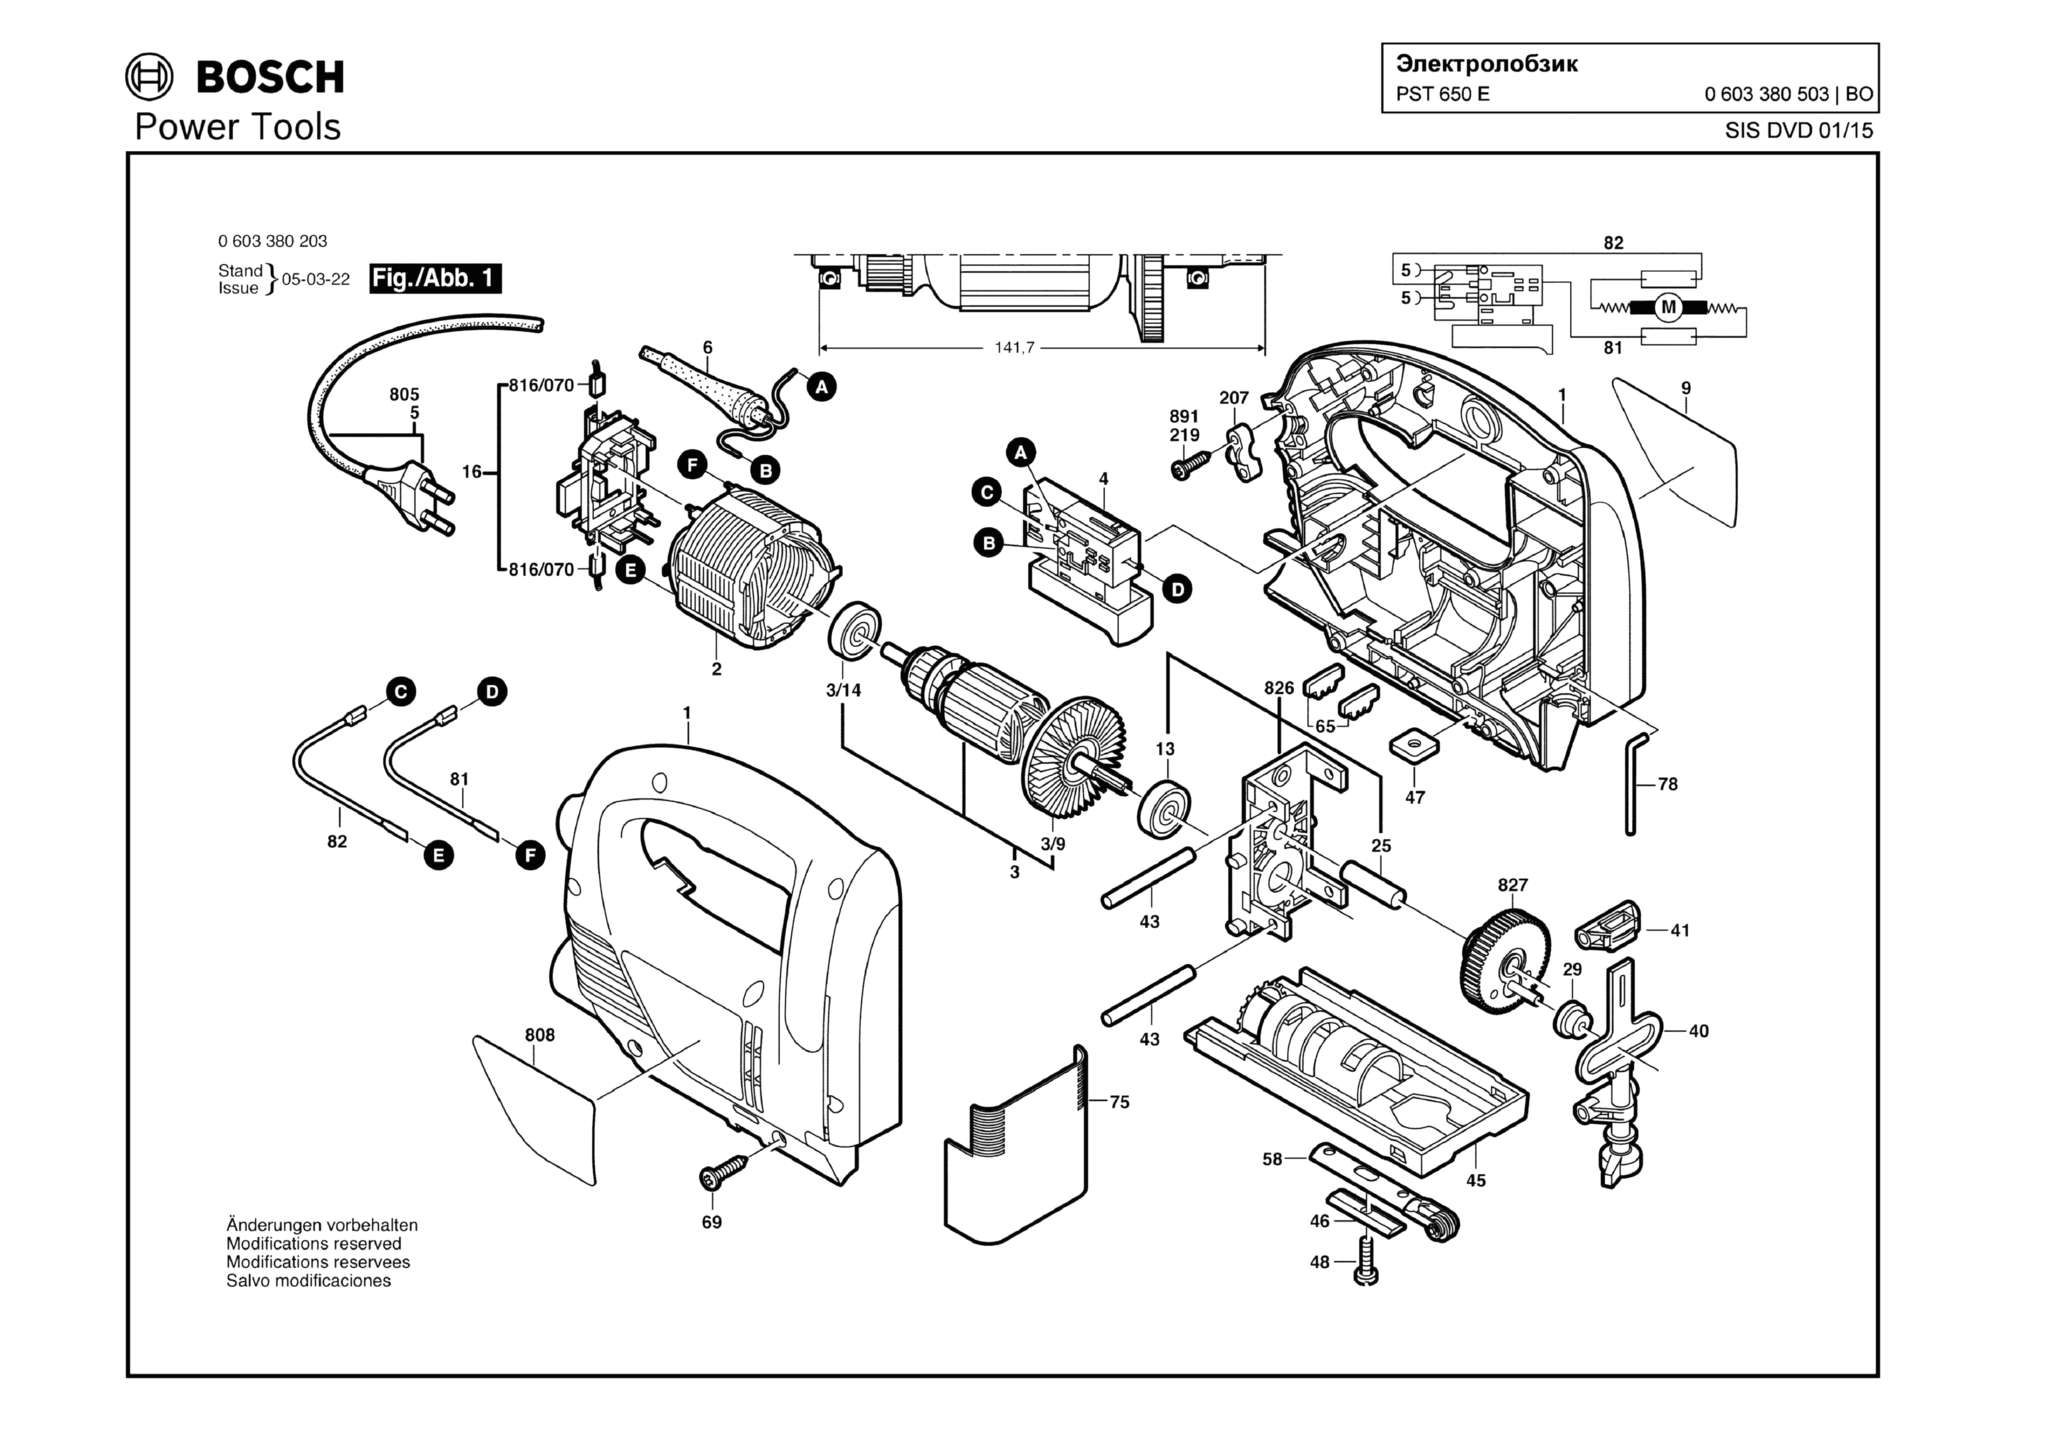 Запчасти, схема и деталировка Bosch PST 650 E (ТИП 0603380503)